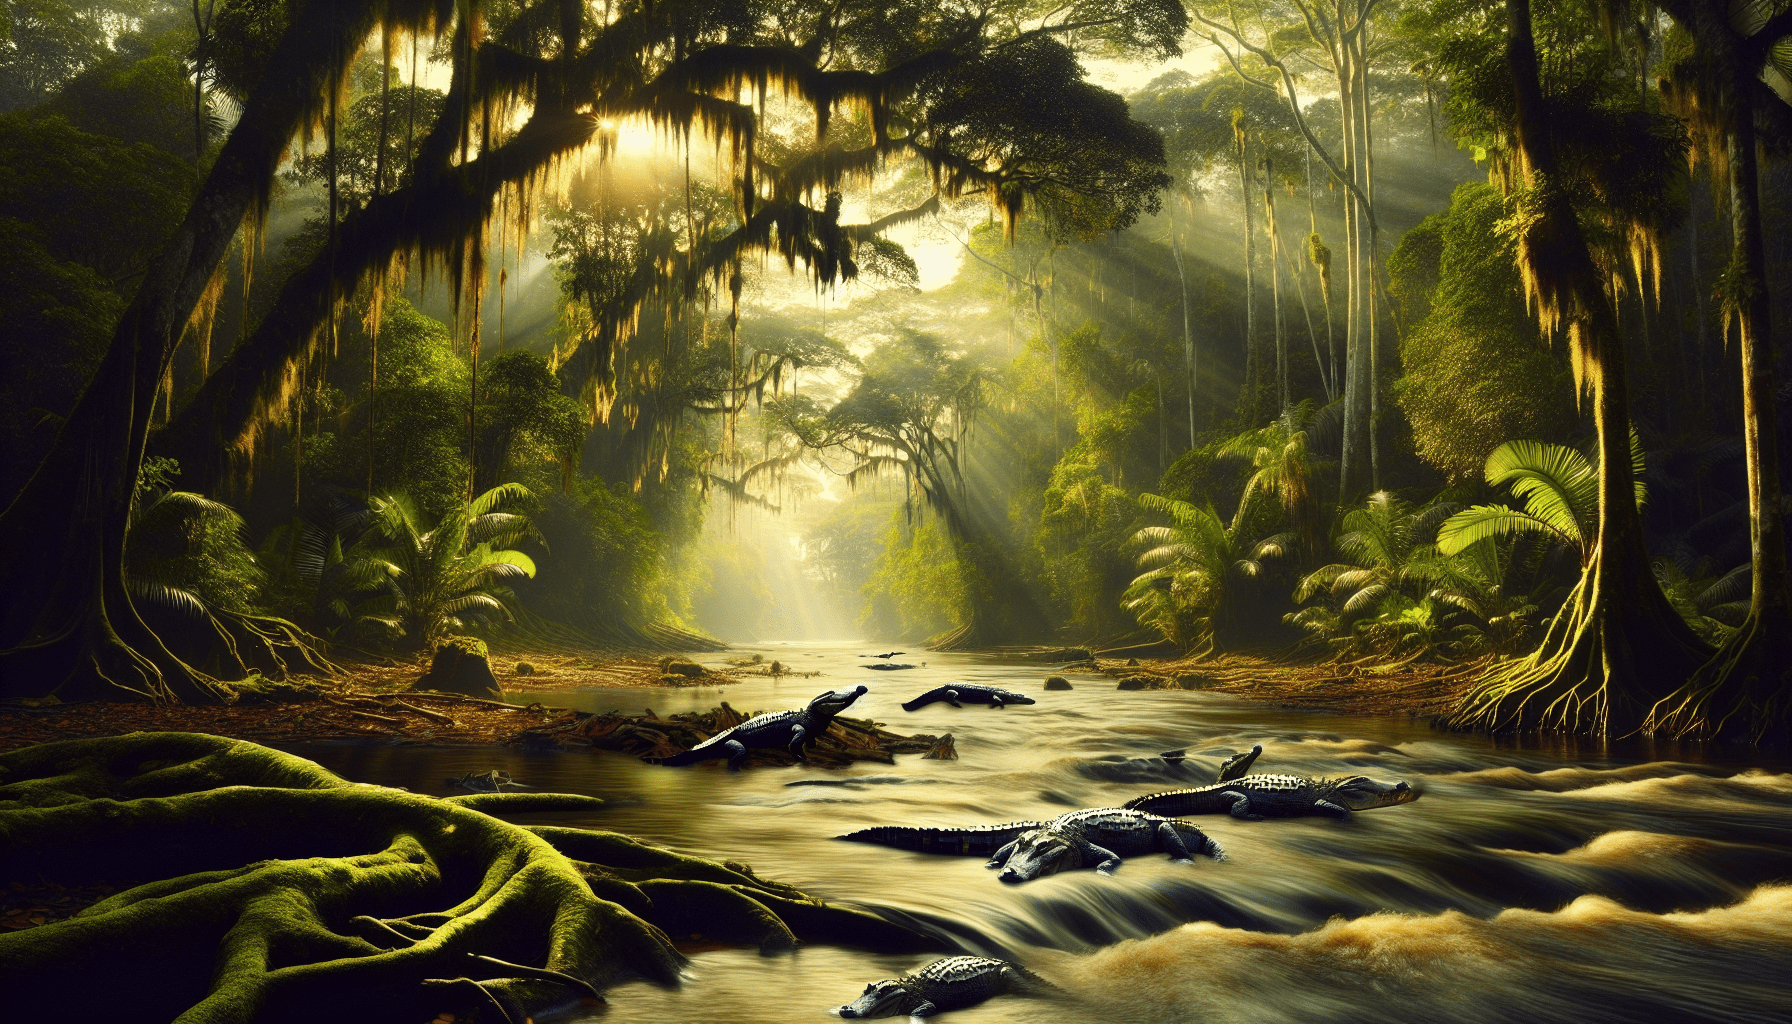 Do Alligators Live In The Amazon River?